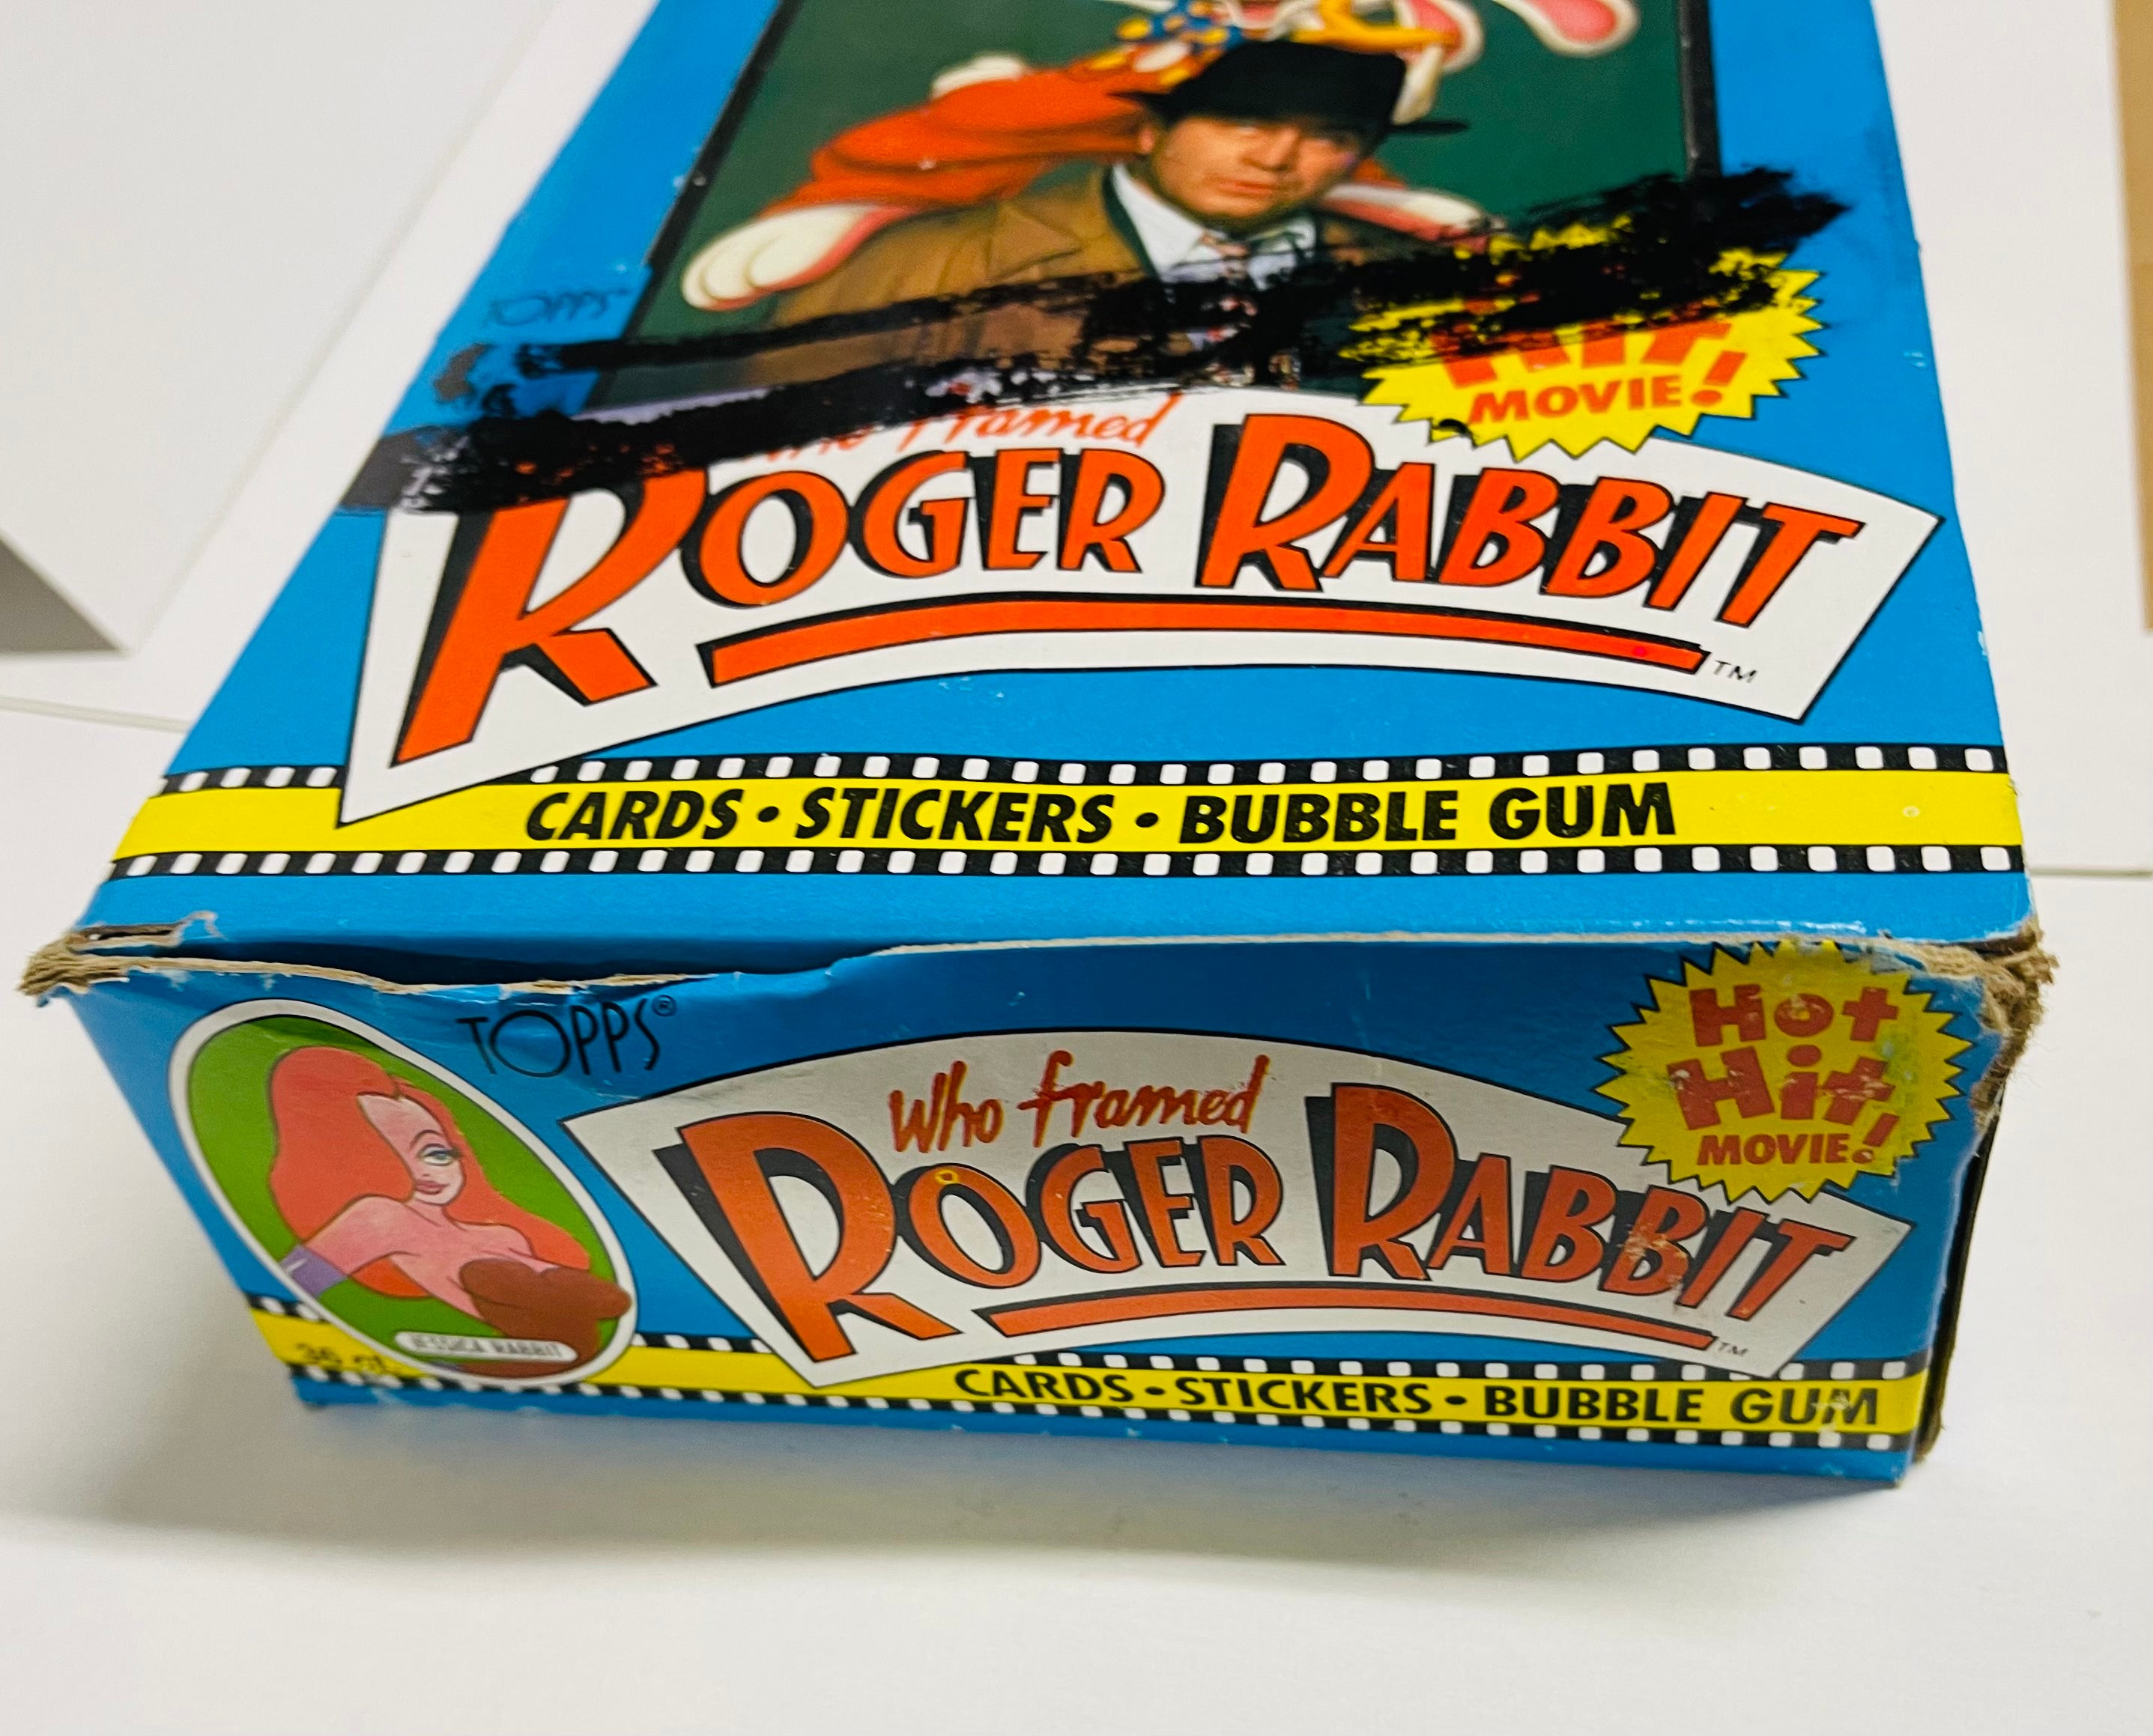 Roger Rabbit movie cards full 36 packs box 1988